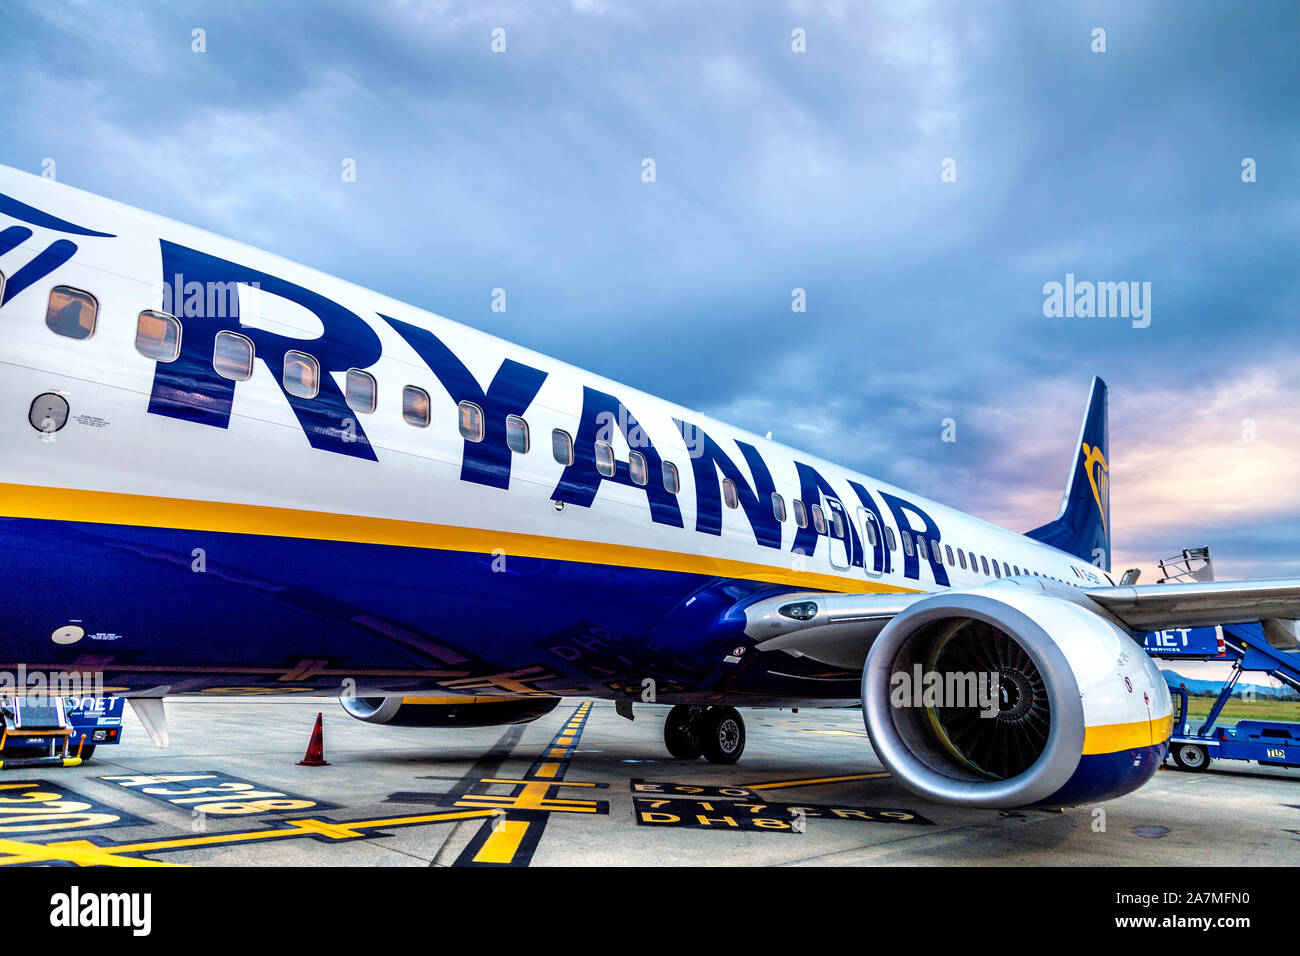 Avion de Ryanair sur le tarmac de l'aéroport de Biarritz, France Banque D'Images